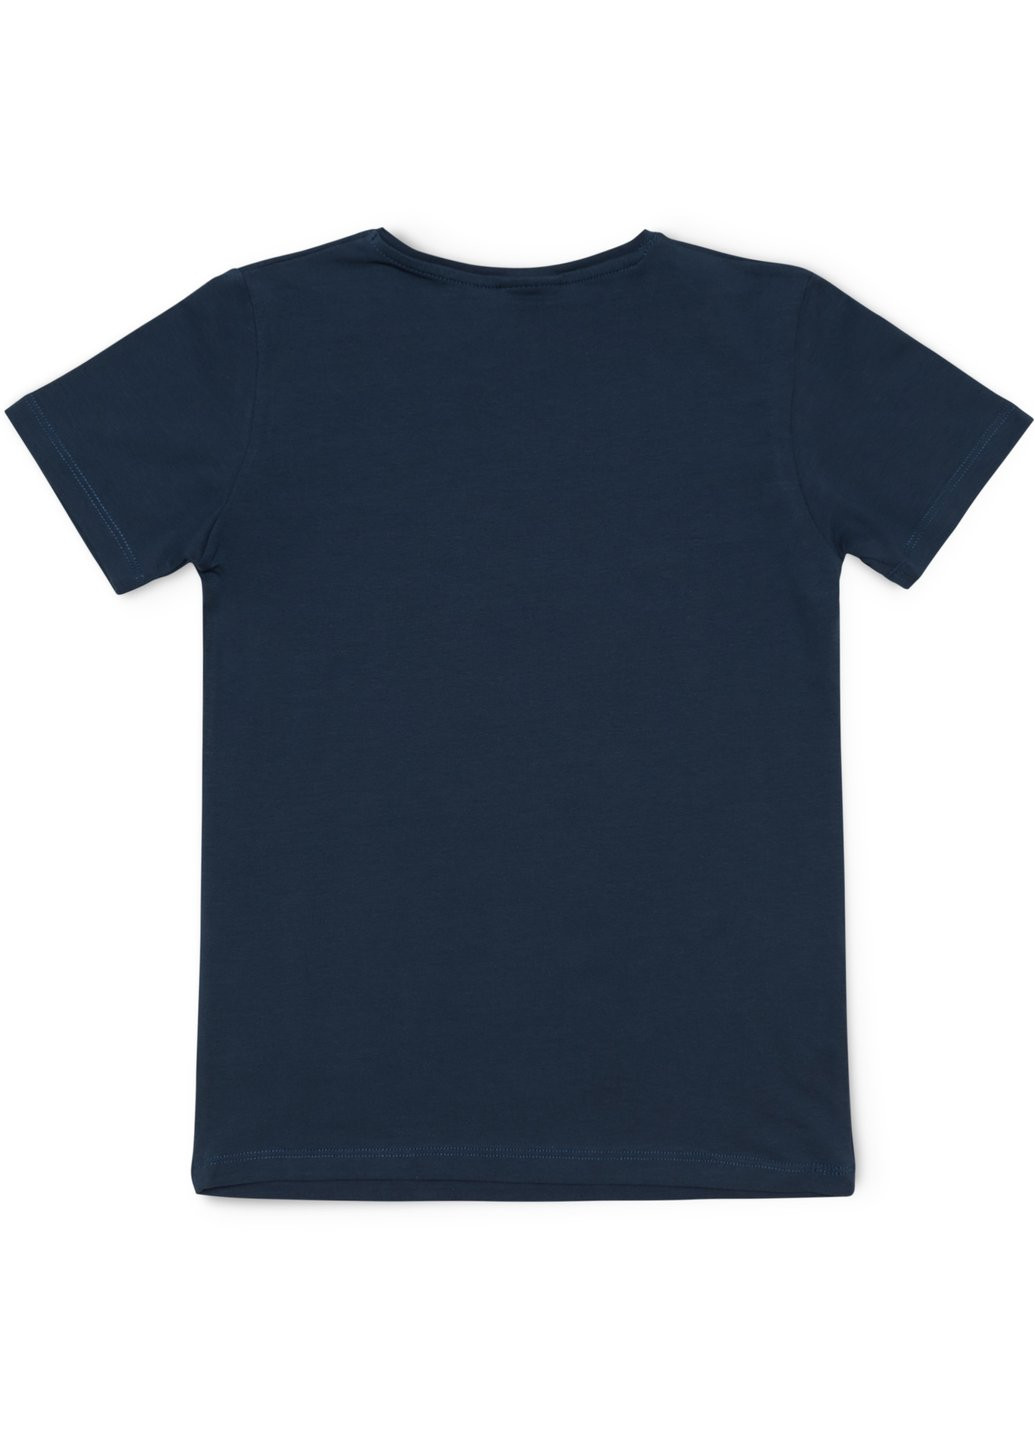 Комбинированная футболка детская базовая (3030-140-blue) Lovetti